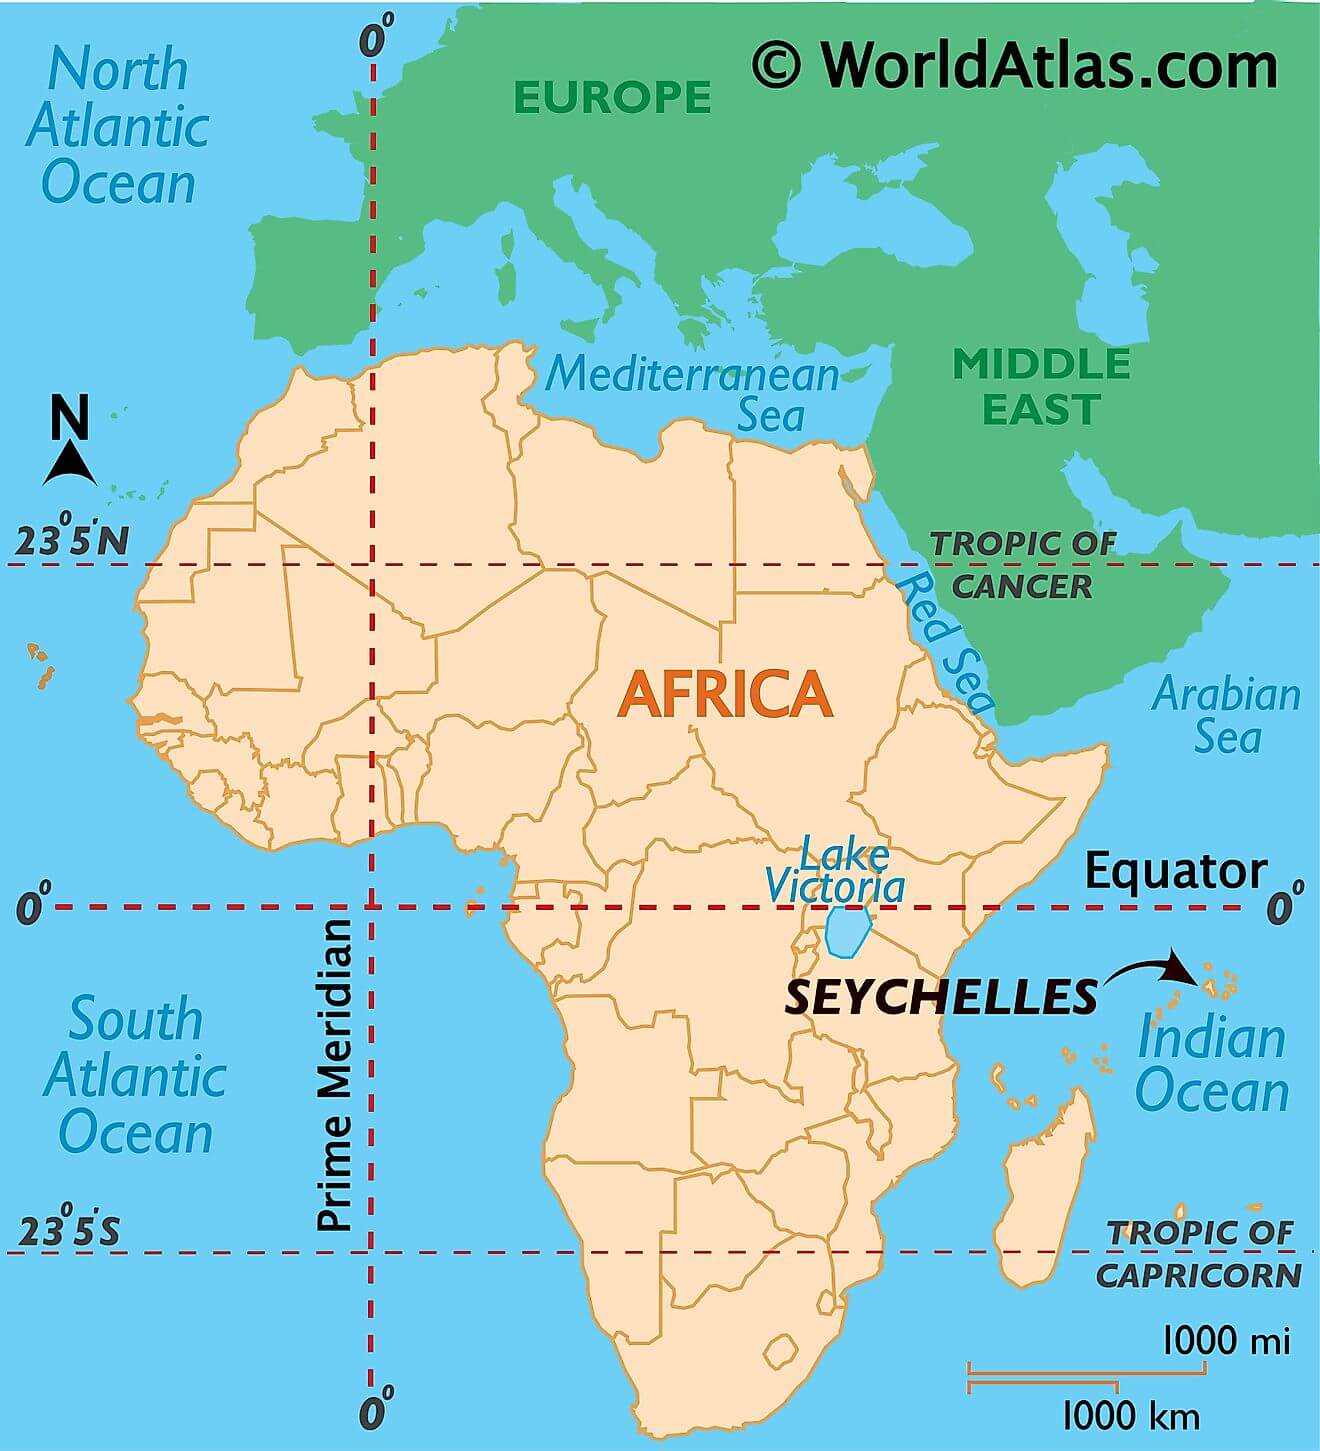 Seychelles ở đâu?